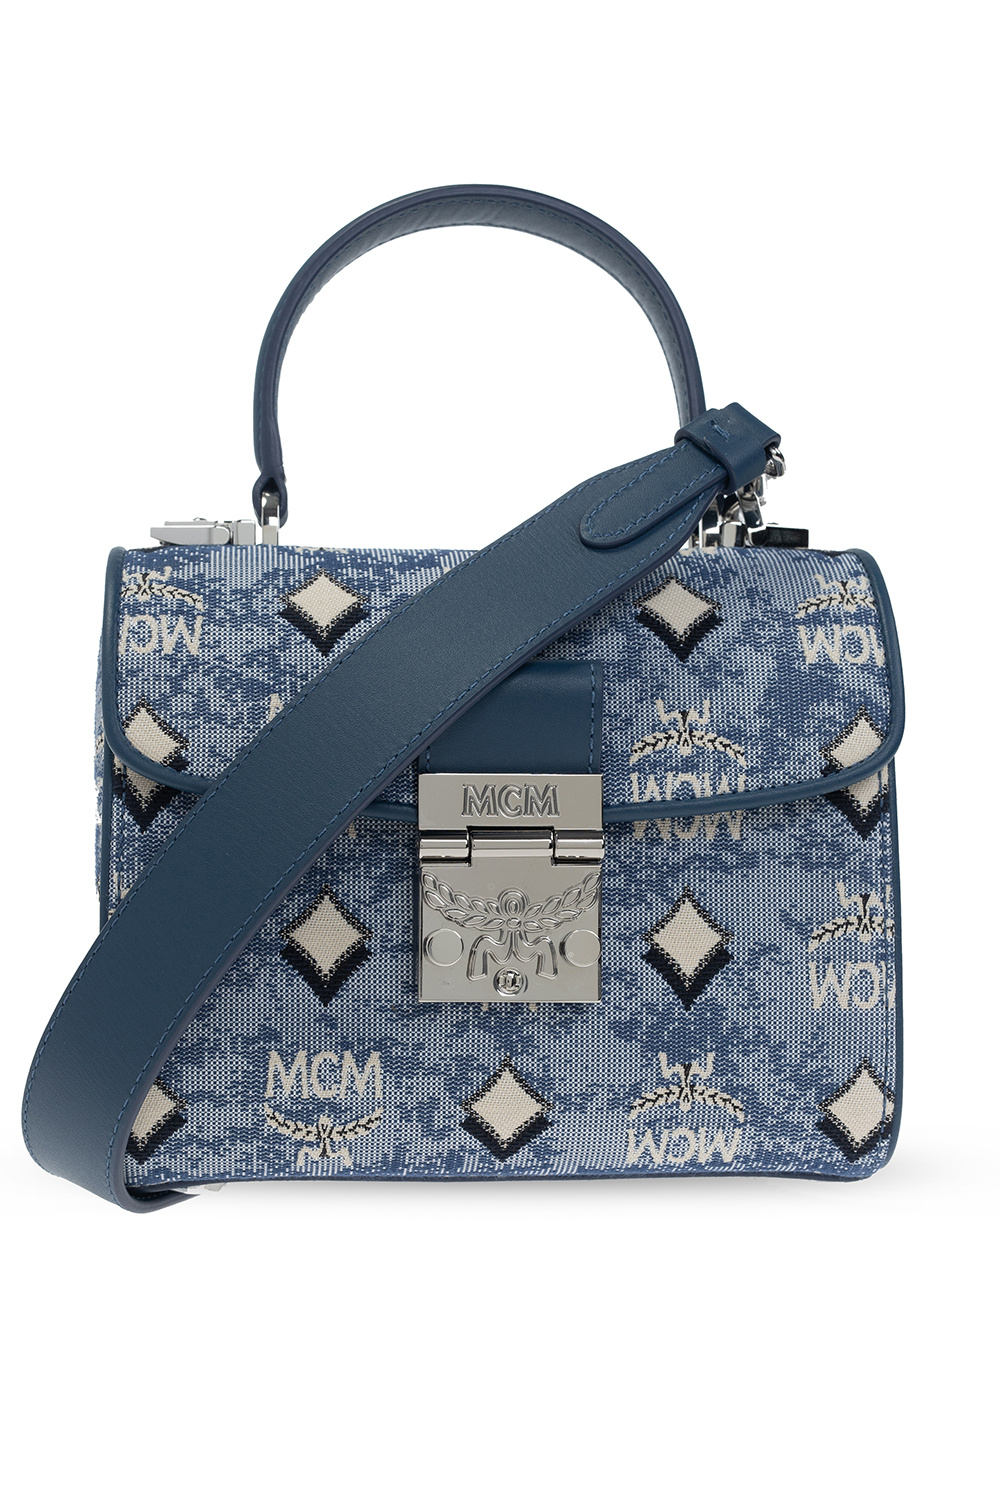 Mcm Women's Shoulder Bag